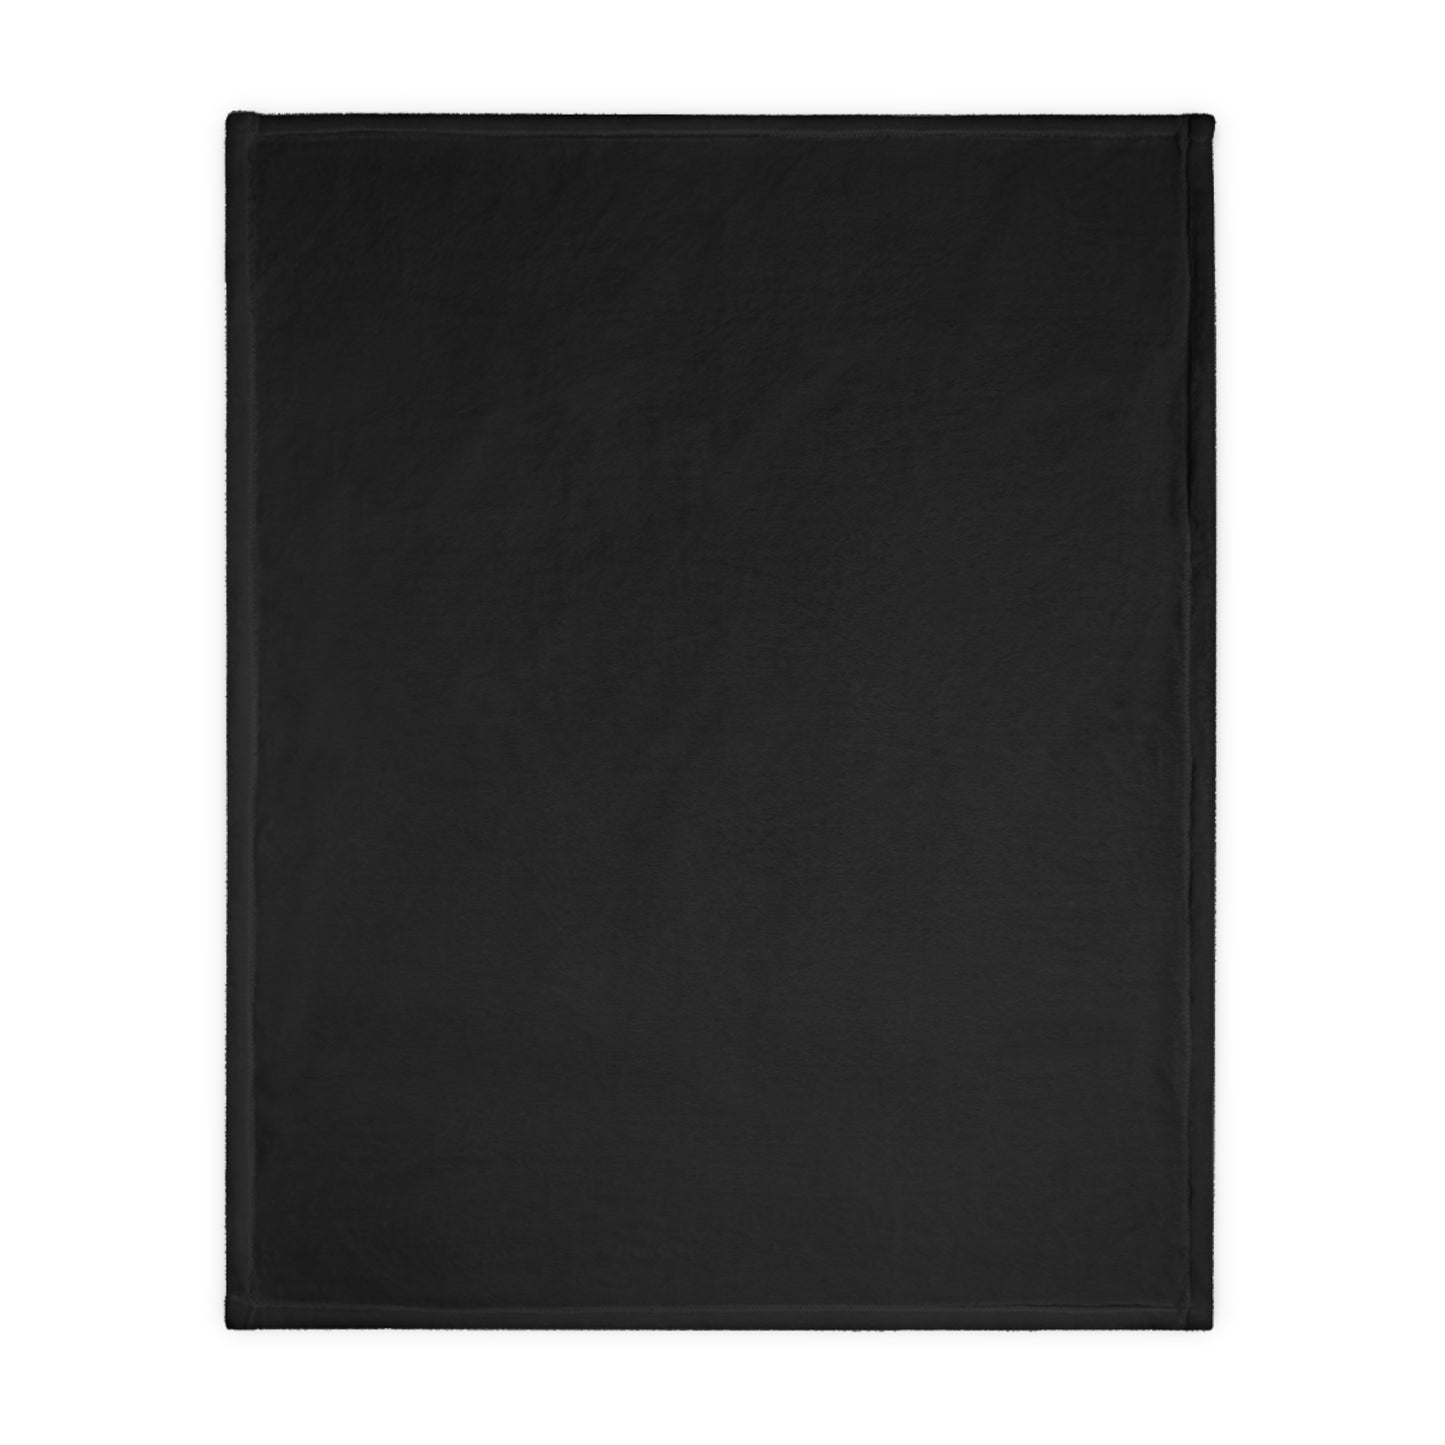 Black Lace | Velveteen Microfiber Blanket (Two Sided)